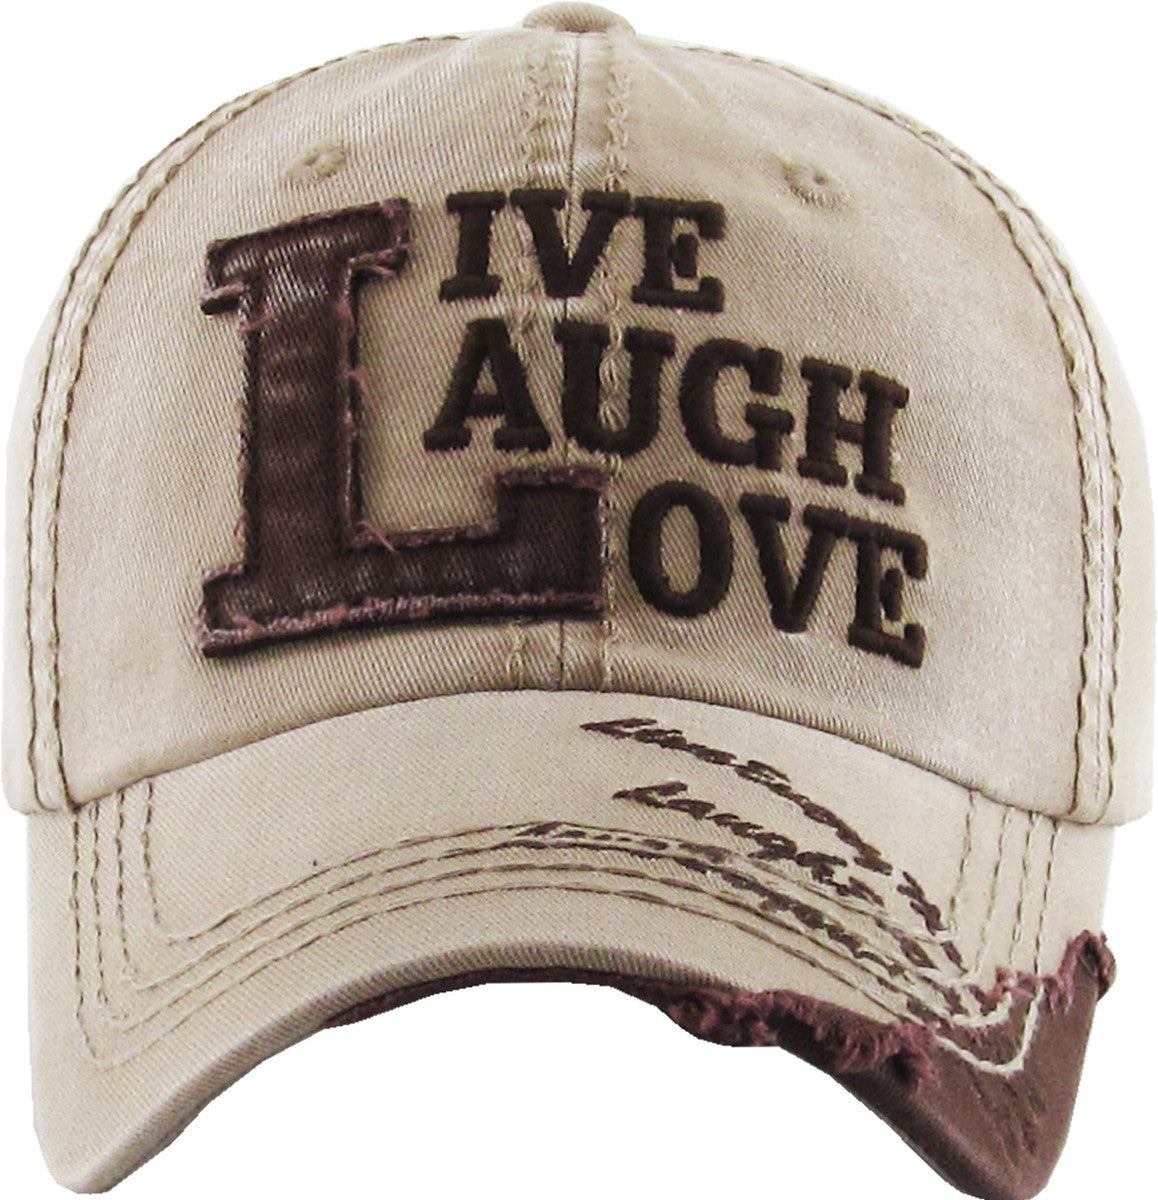 Live Laugh Love Vintage Hat